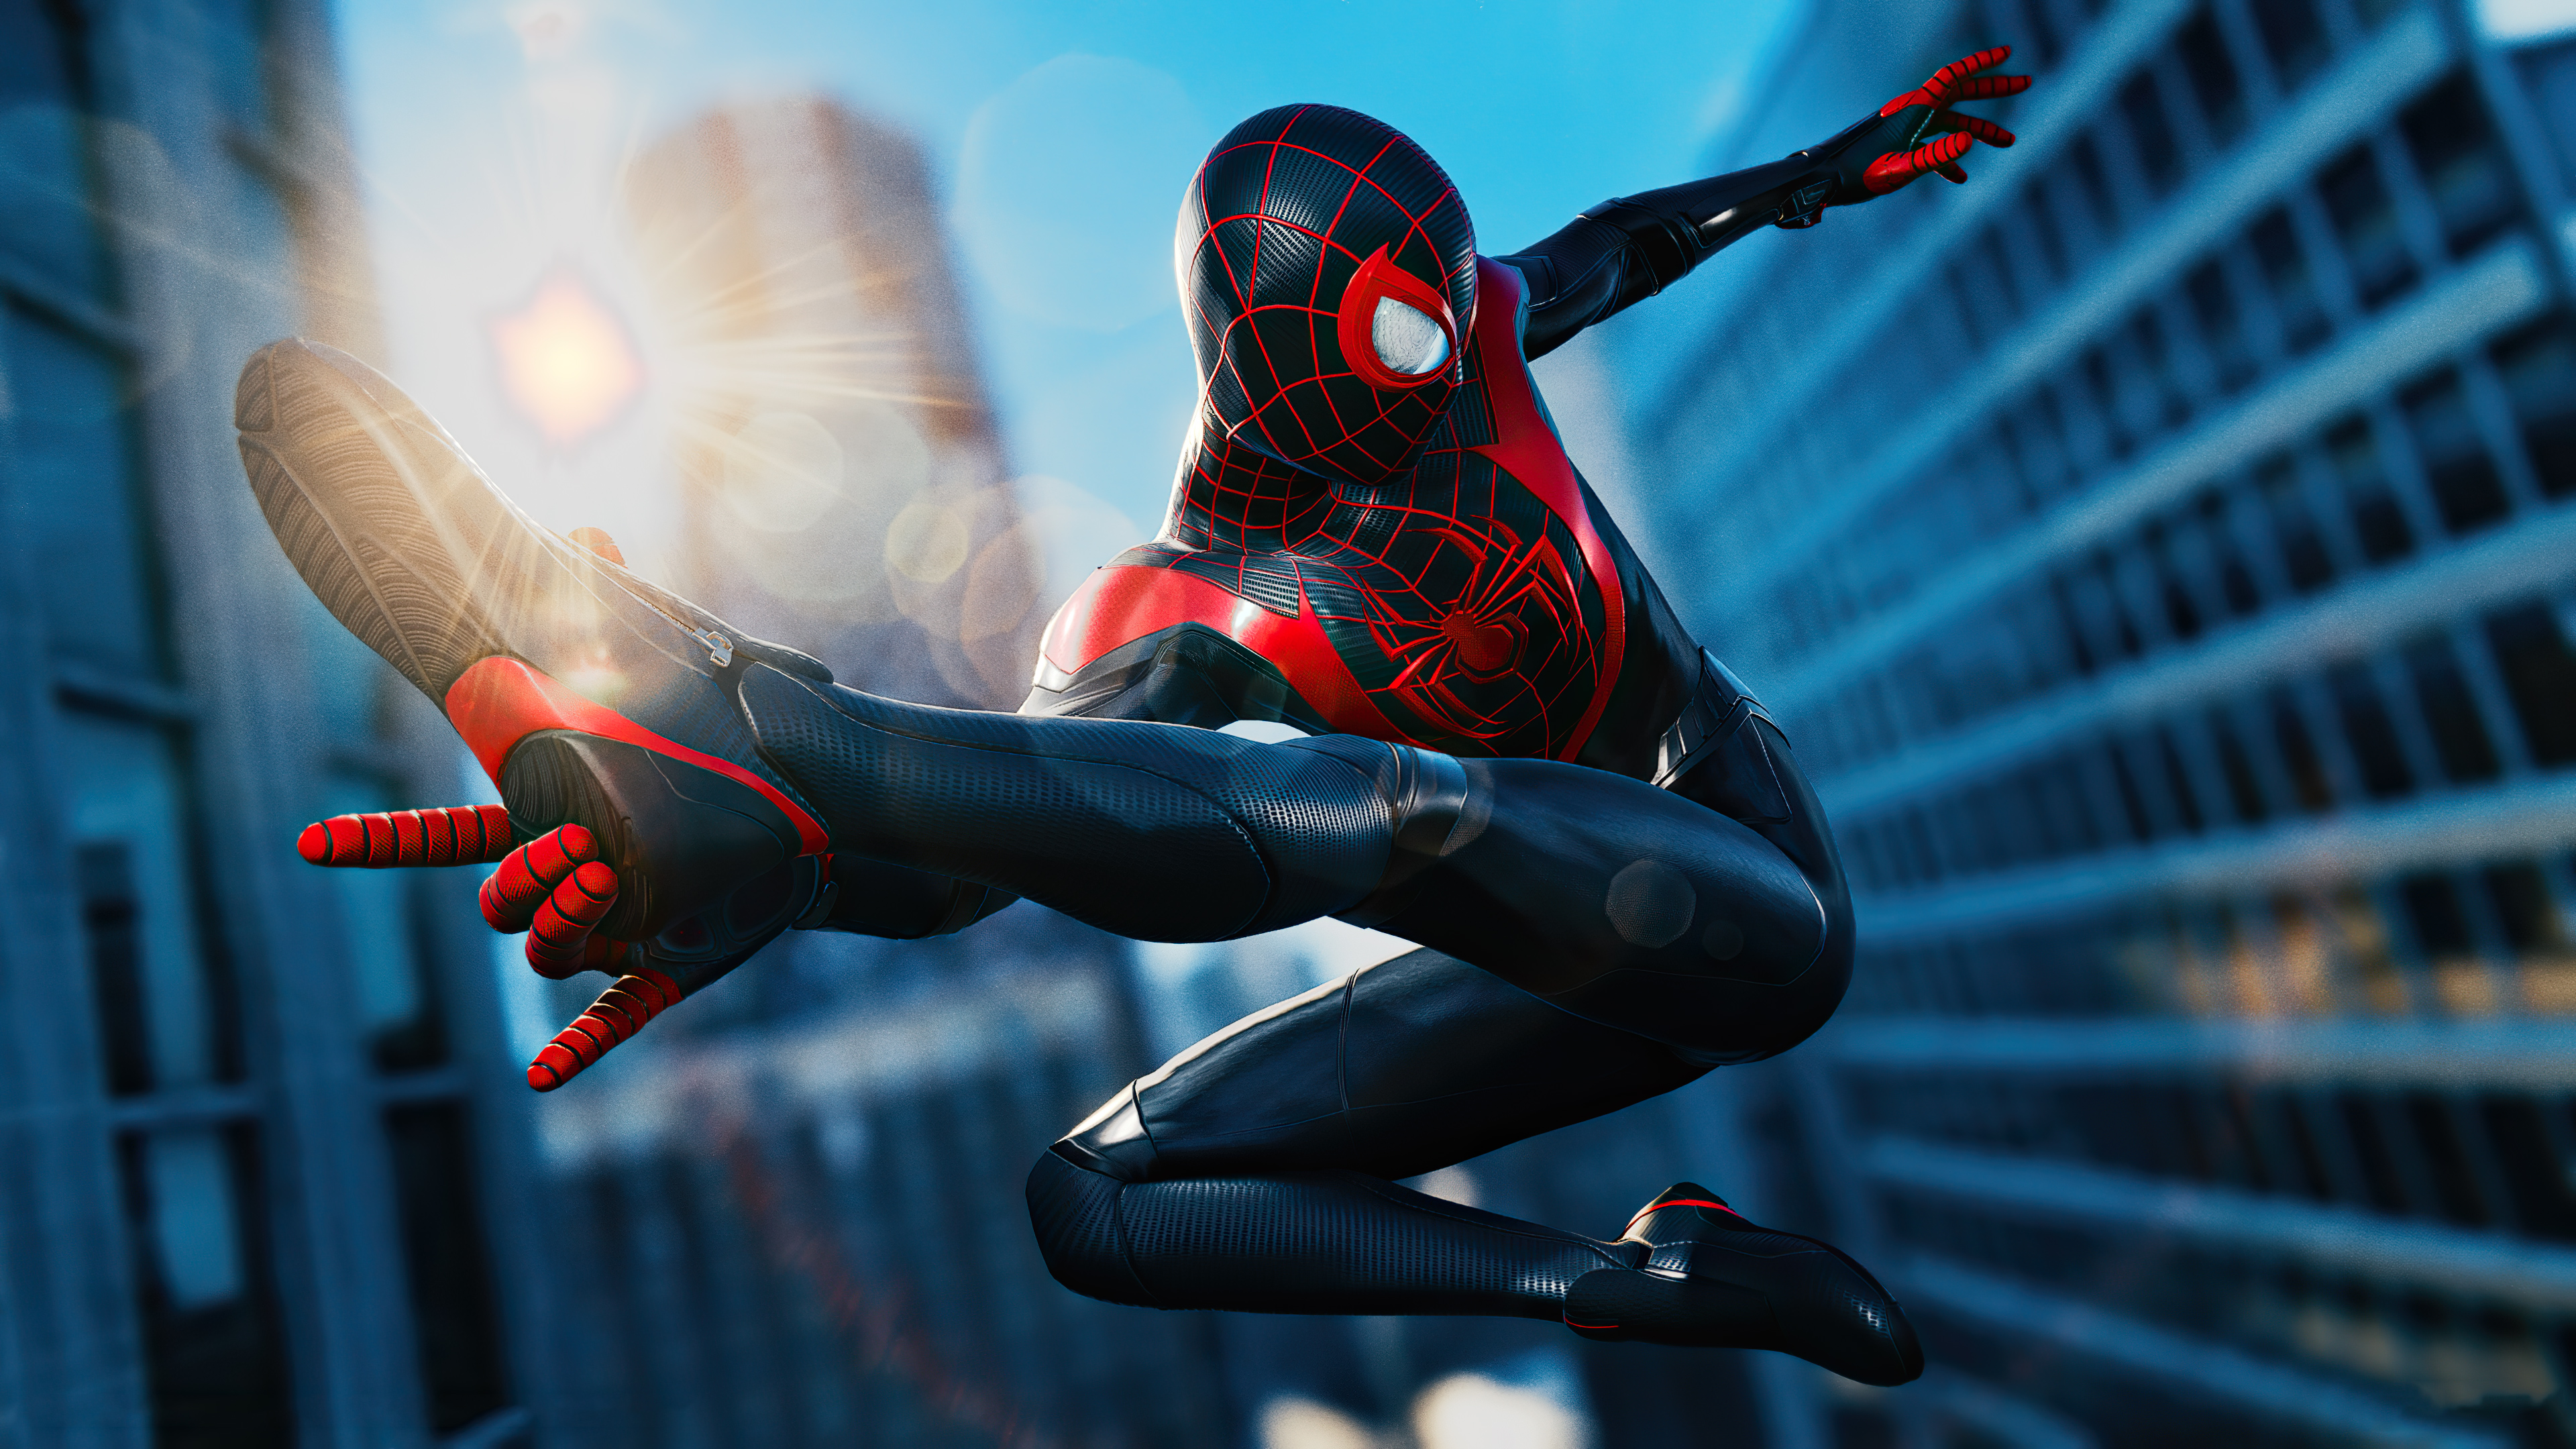 Fonds d'écran Spider Man pour PC, télécharger gratuitement des